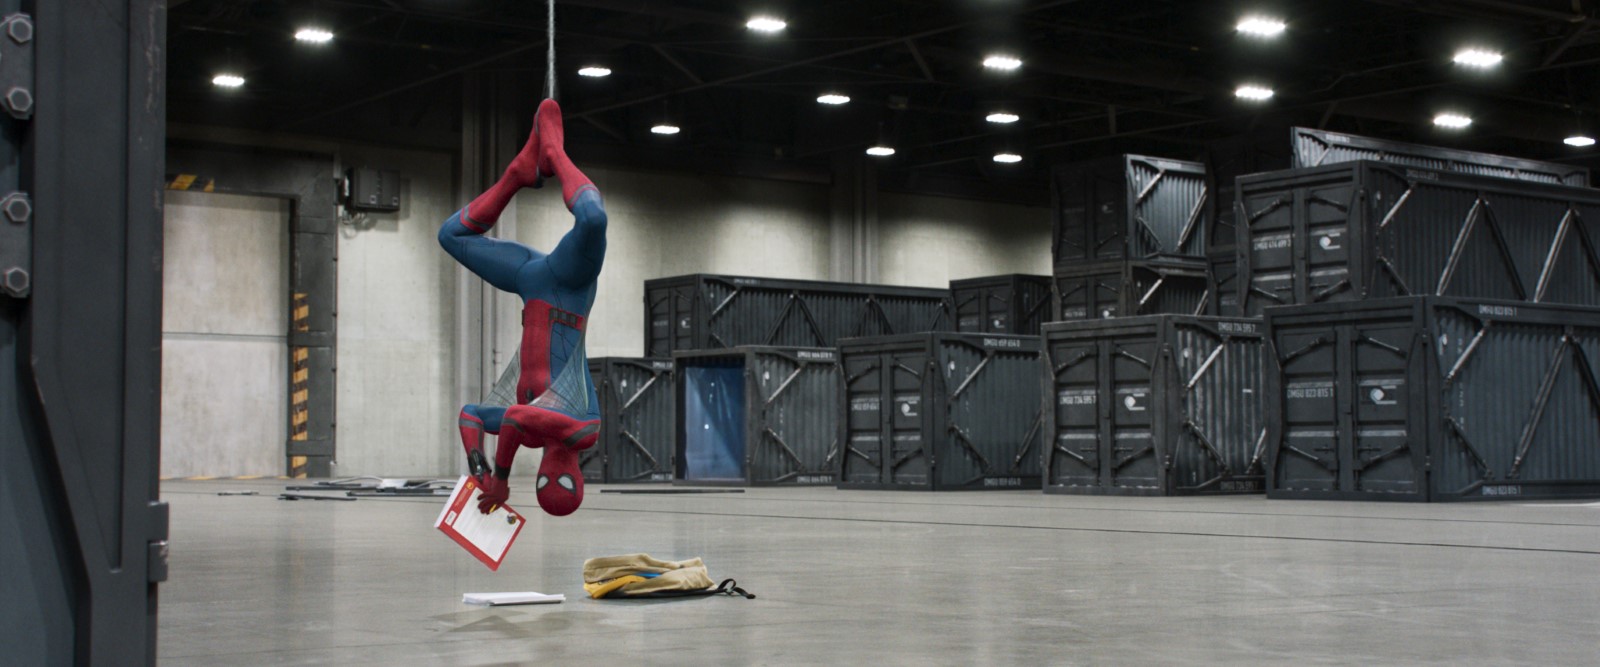 Spider-Man : Tom Holland révèle le titre du sequel de Homecoming - CinéSéri...